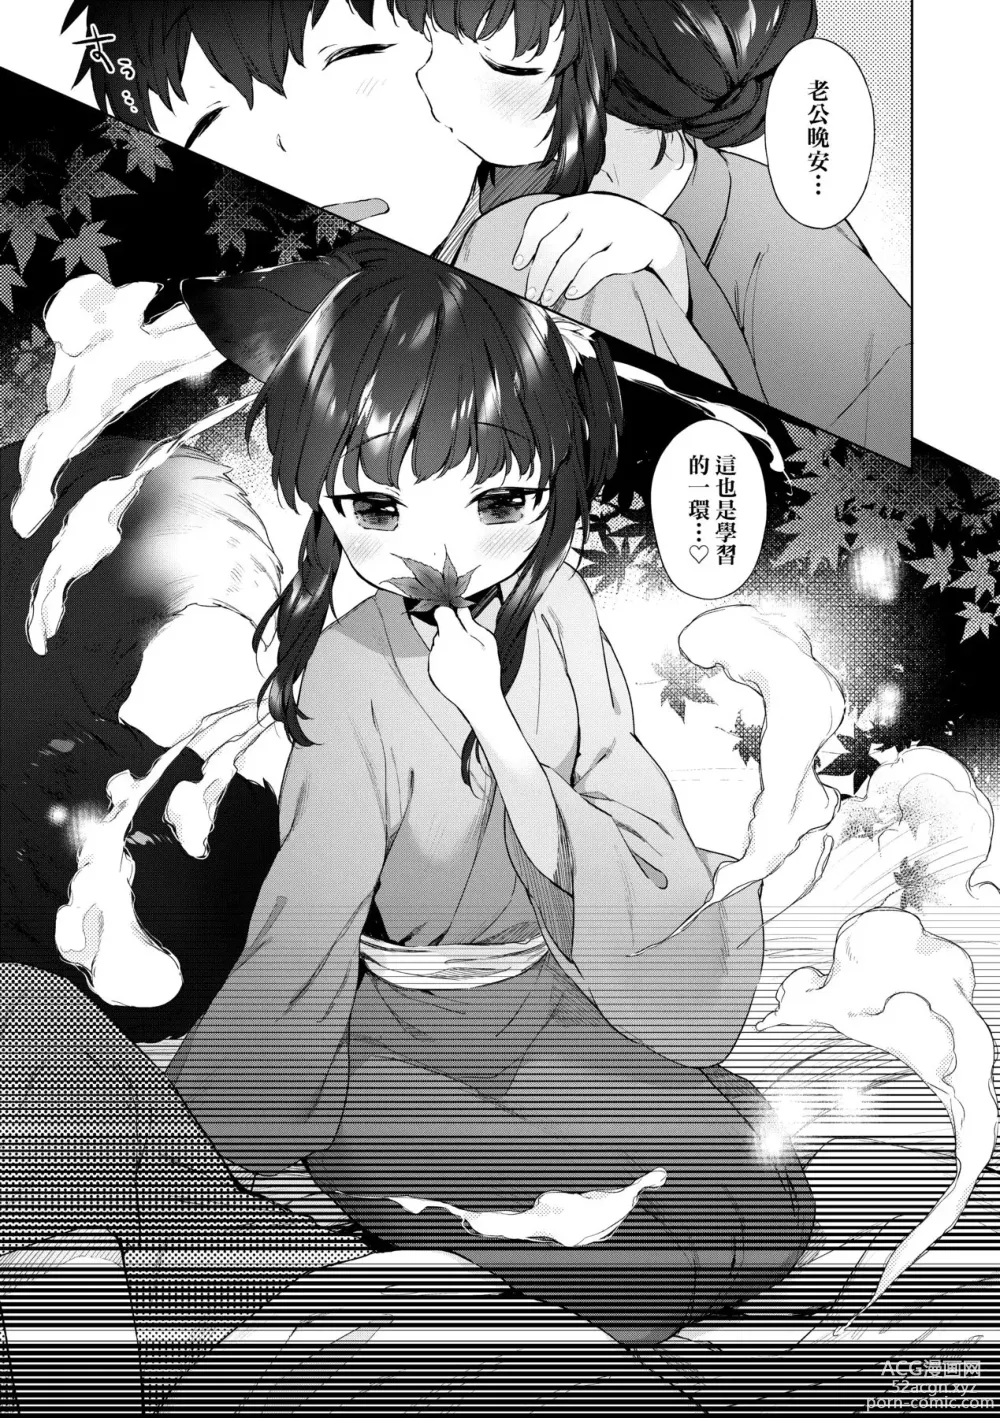 Page 10 of manga Utsushiyo to Osanaduma (decensored)